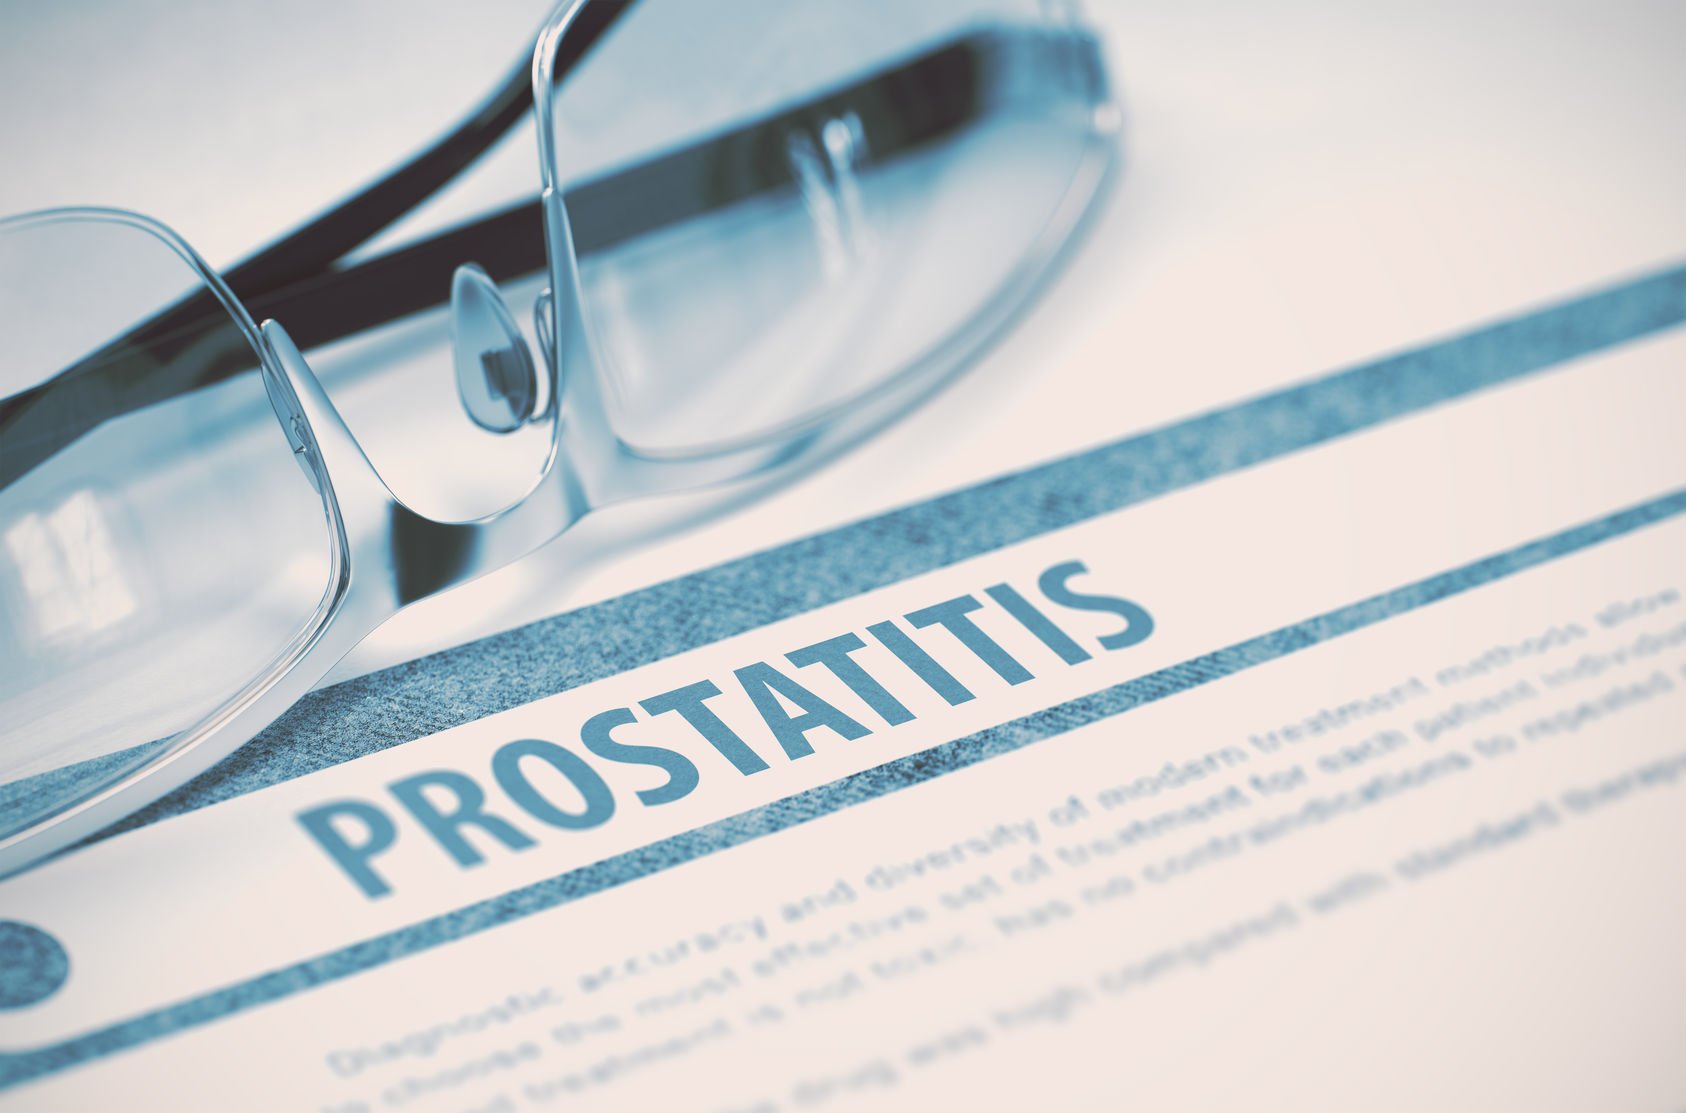 prostatitis behandlung pflanzlich